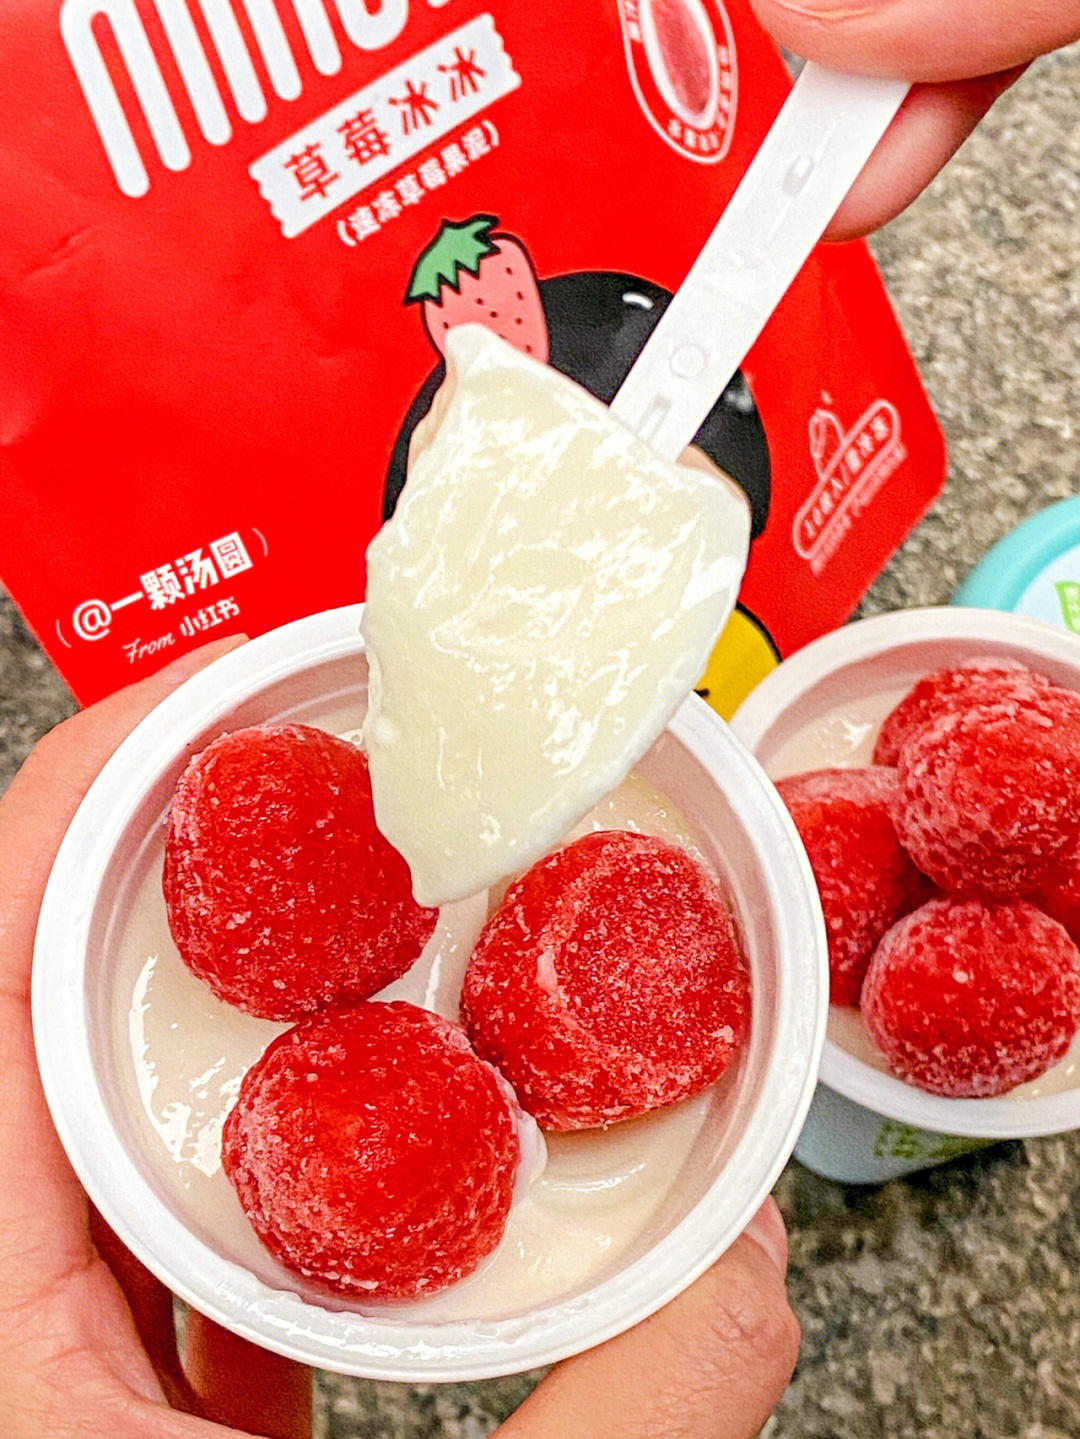 分享新吃法60冰淇淋酸奶加草莓冰口感绝了